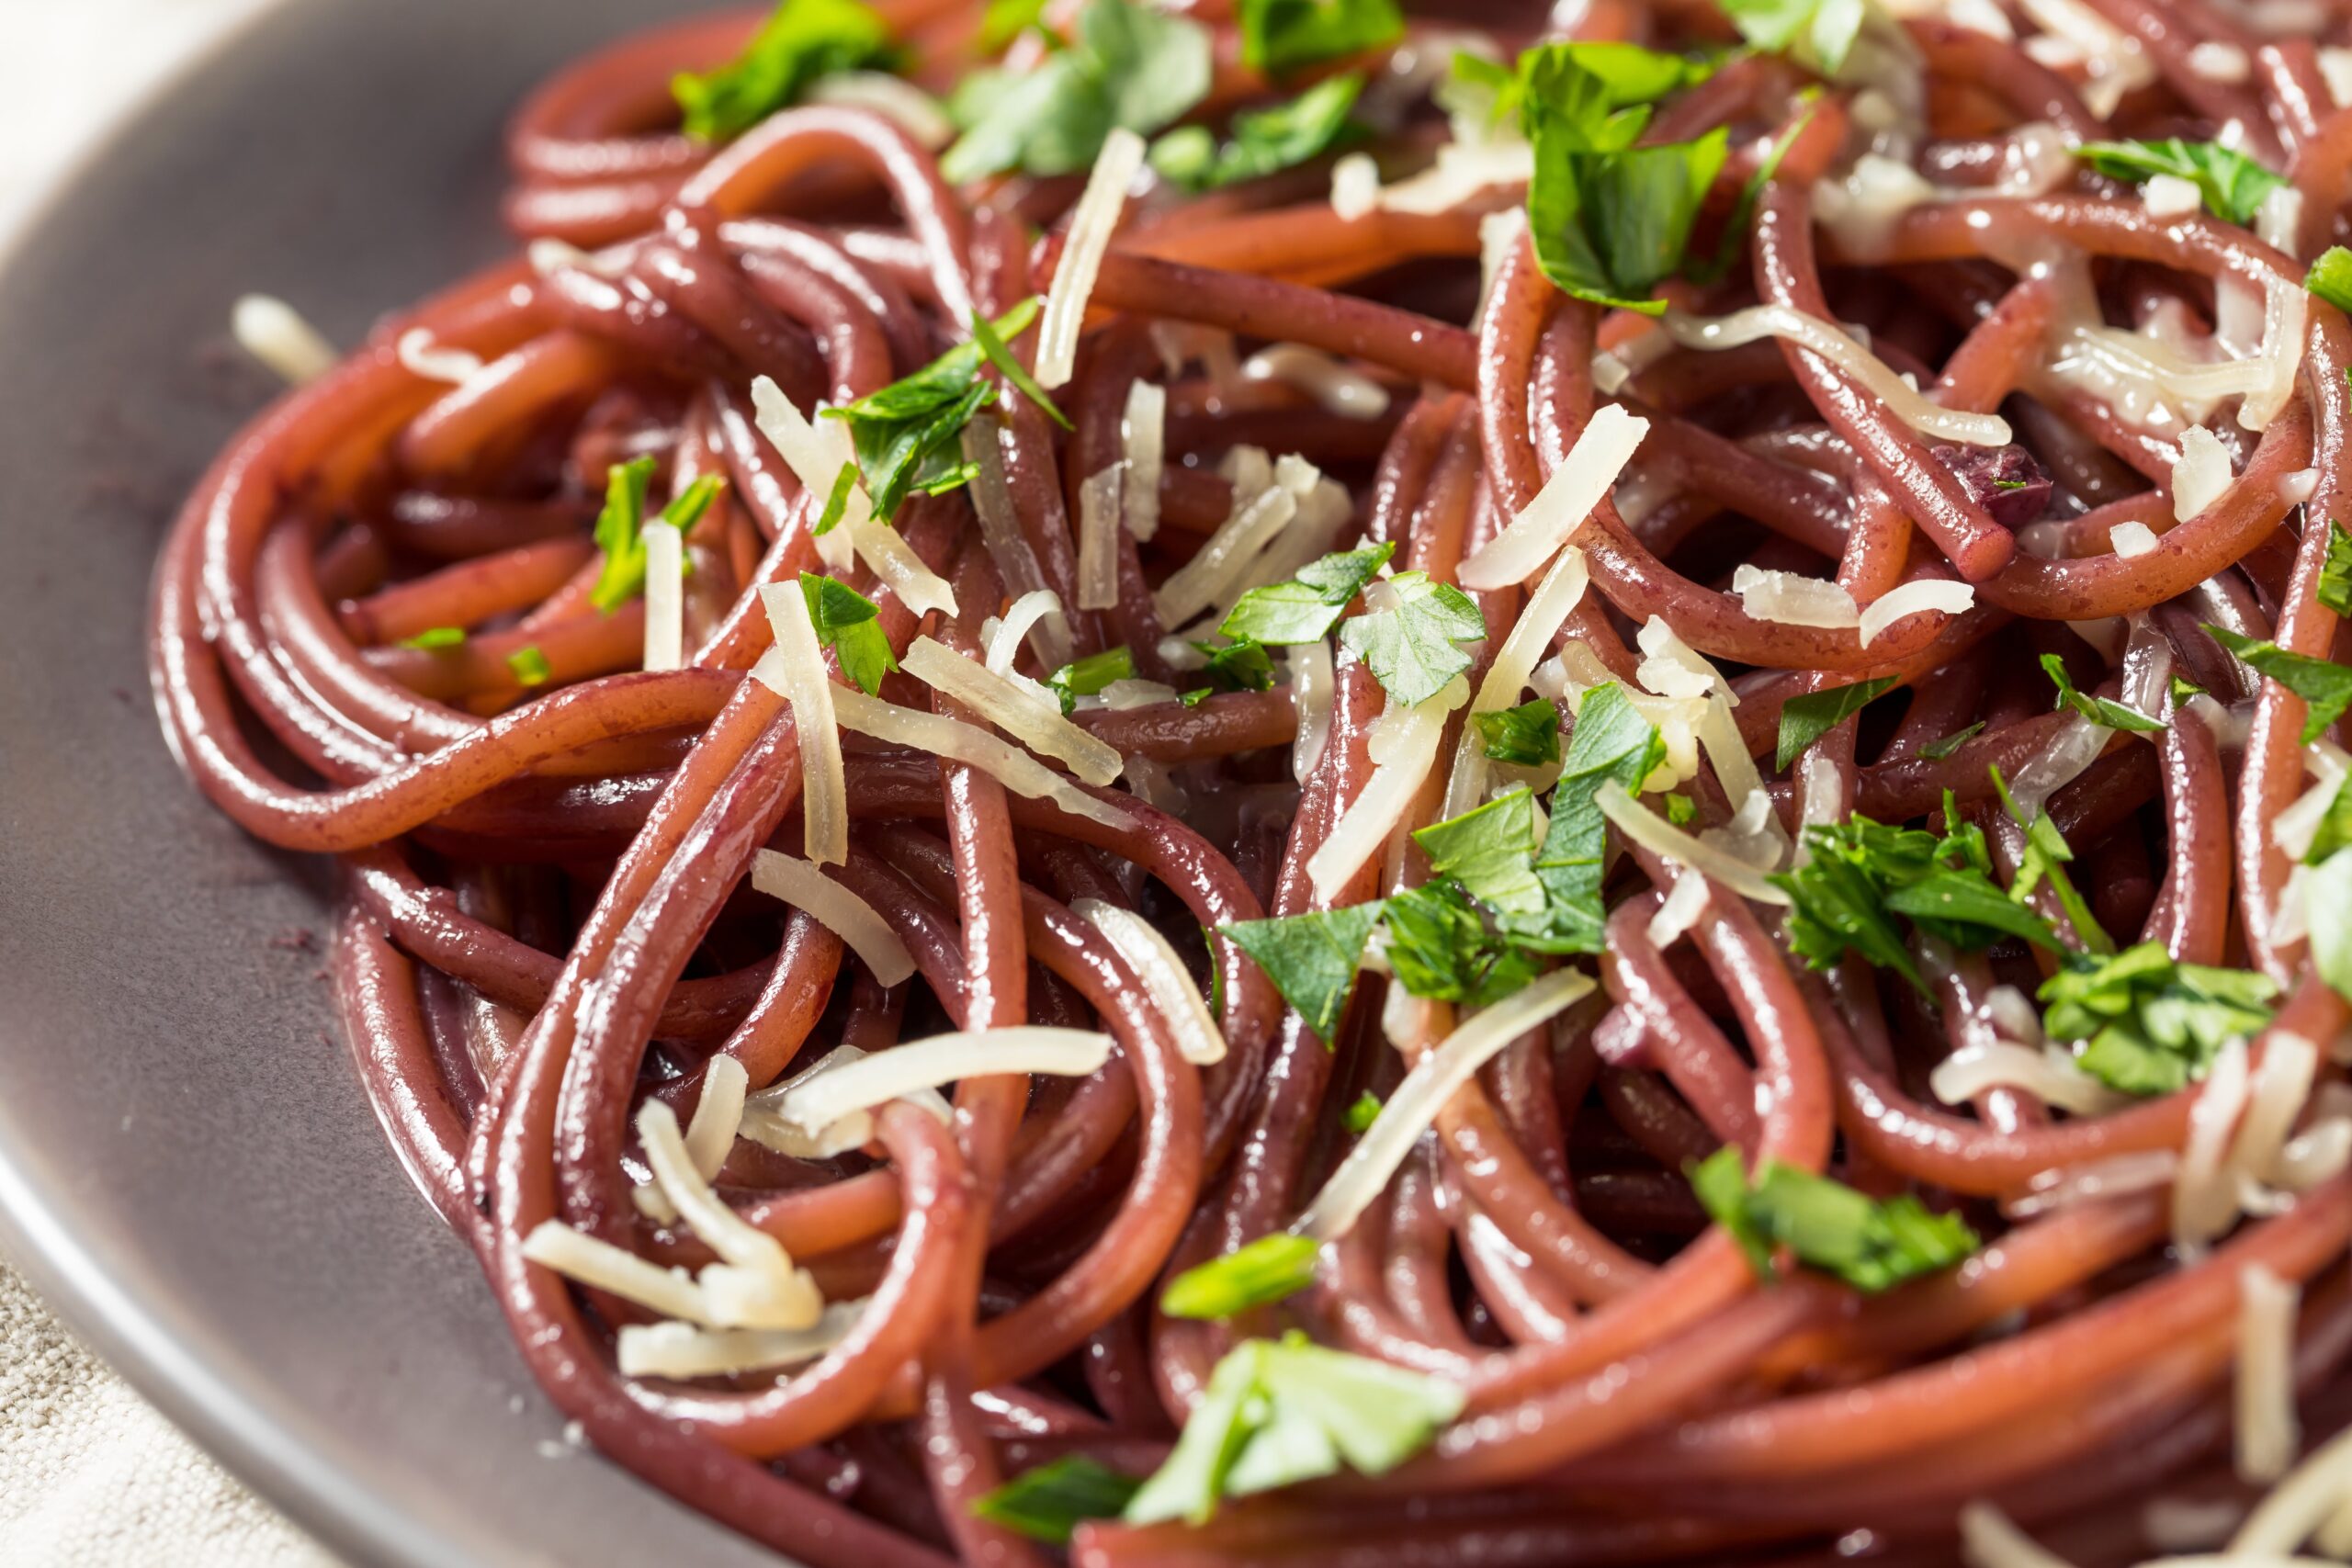 Spaghetti aglio, olio e peperoncino risottati al vino rosso: top!